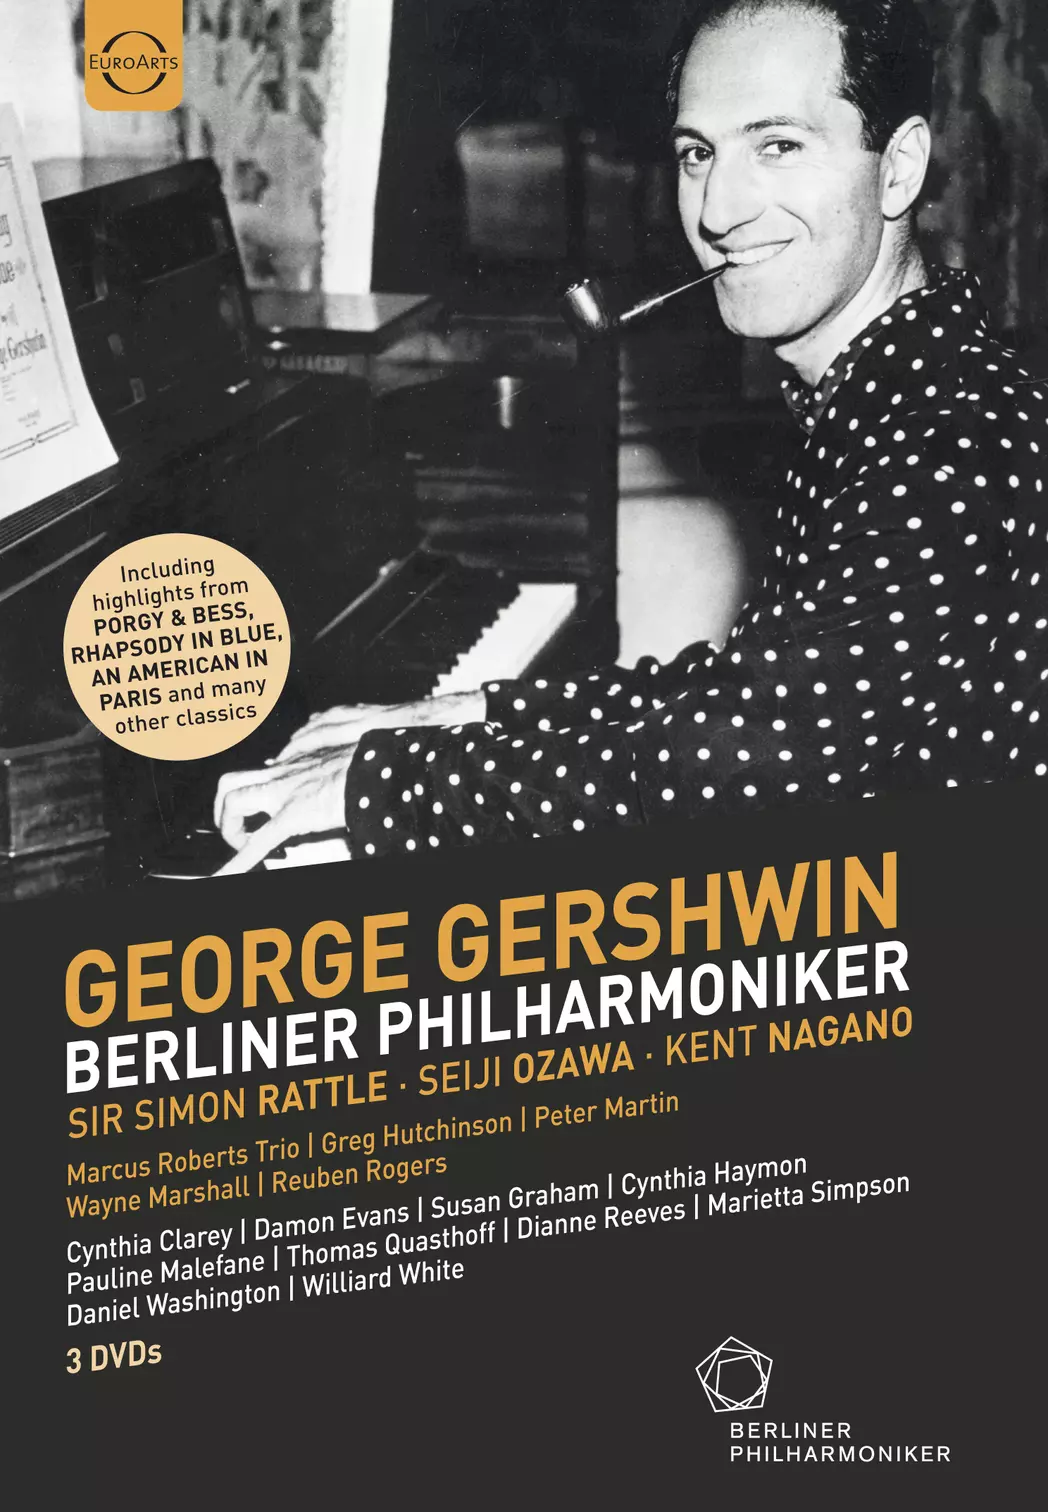 Berliner Philharmoniker and George Gershwin